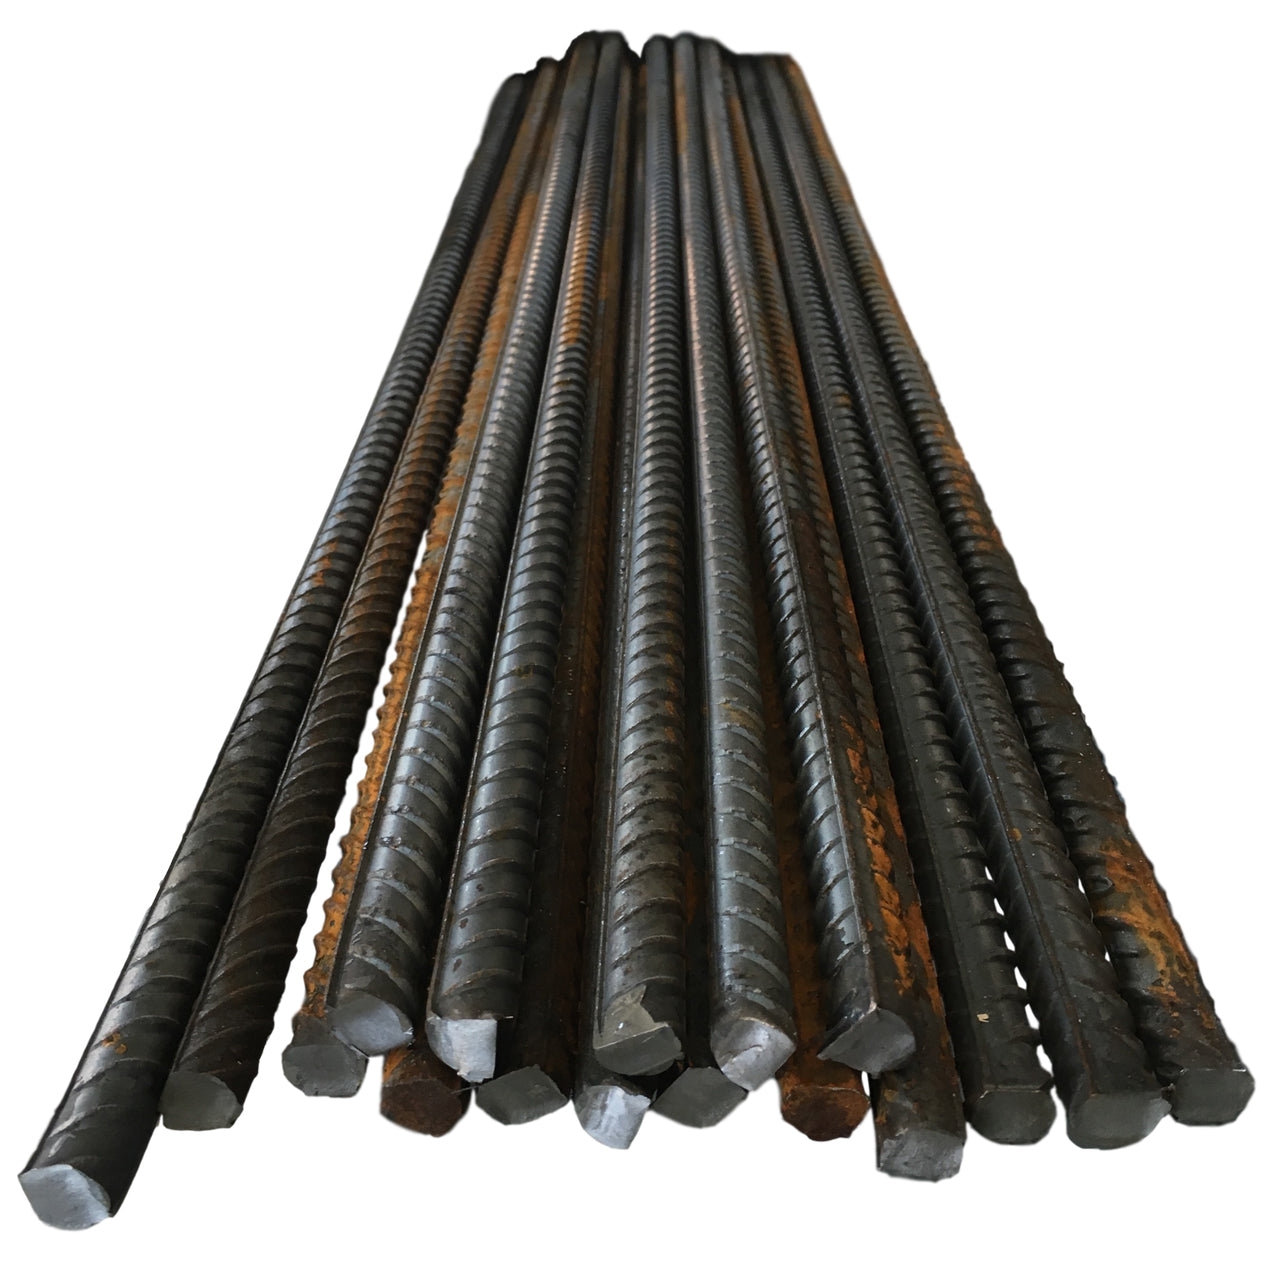 Reinforcing Steel Bar – Rebar – 10mm x 1000mm – Site Equipment – Just The Job Supplies